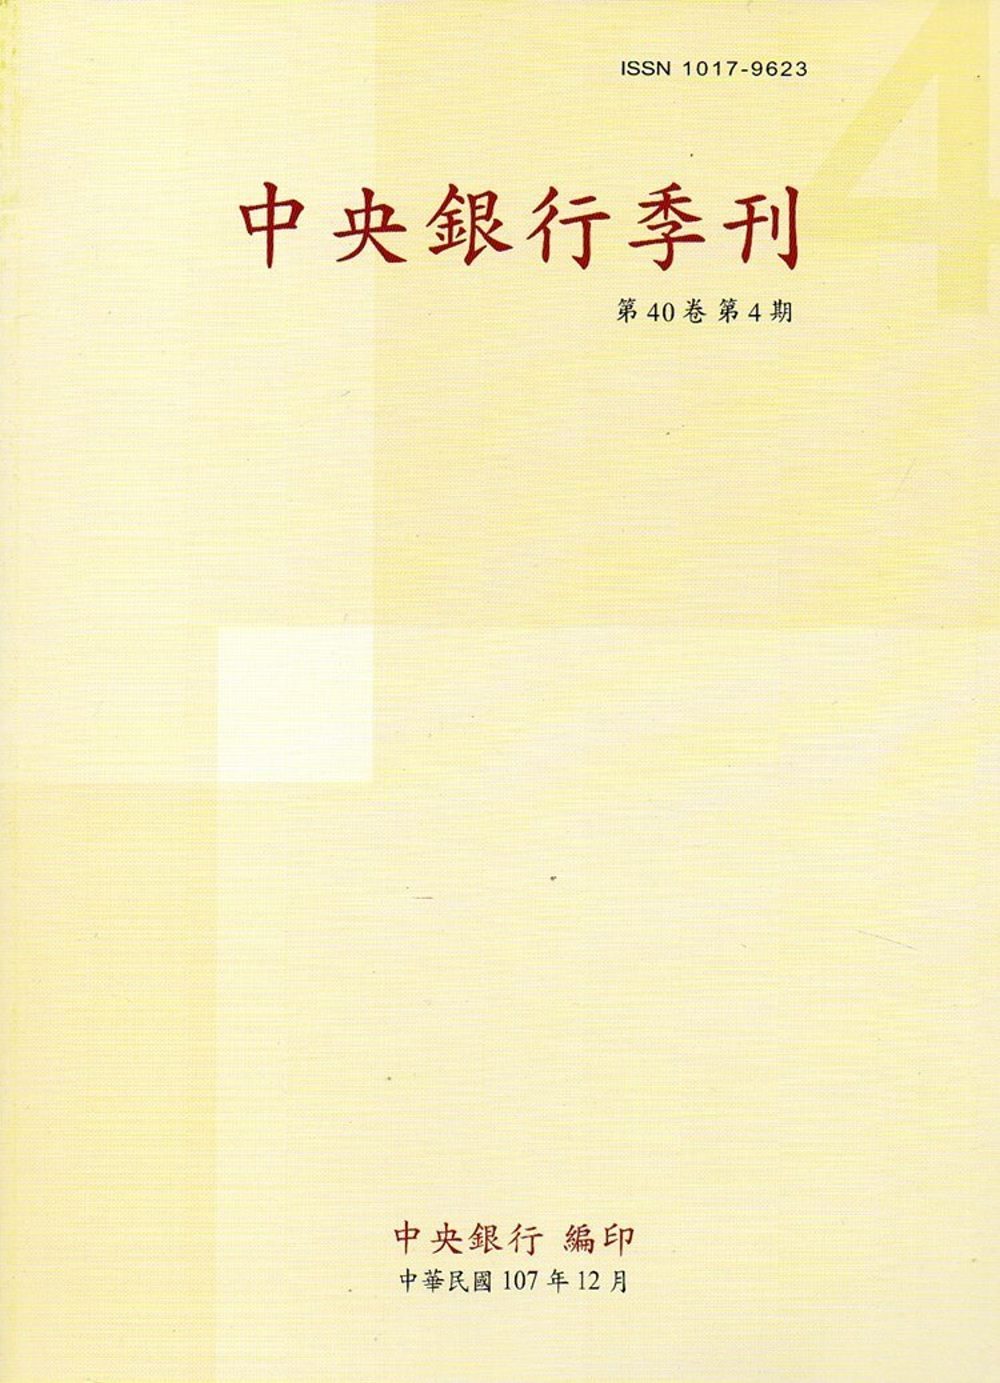 中央銀行季刊40卷4期(107.12)